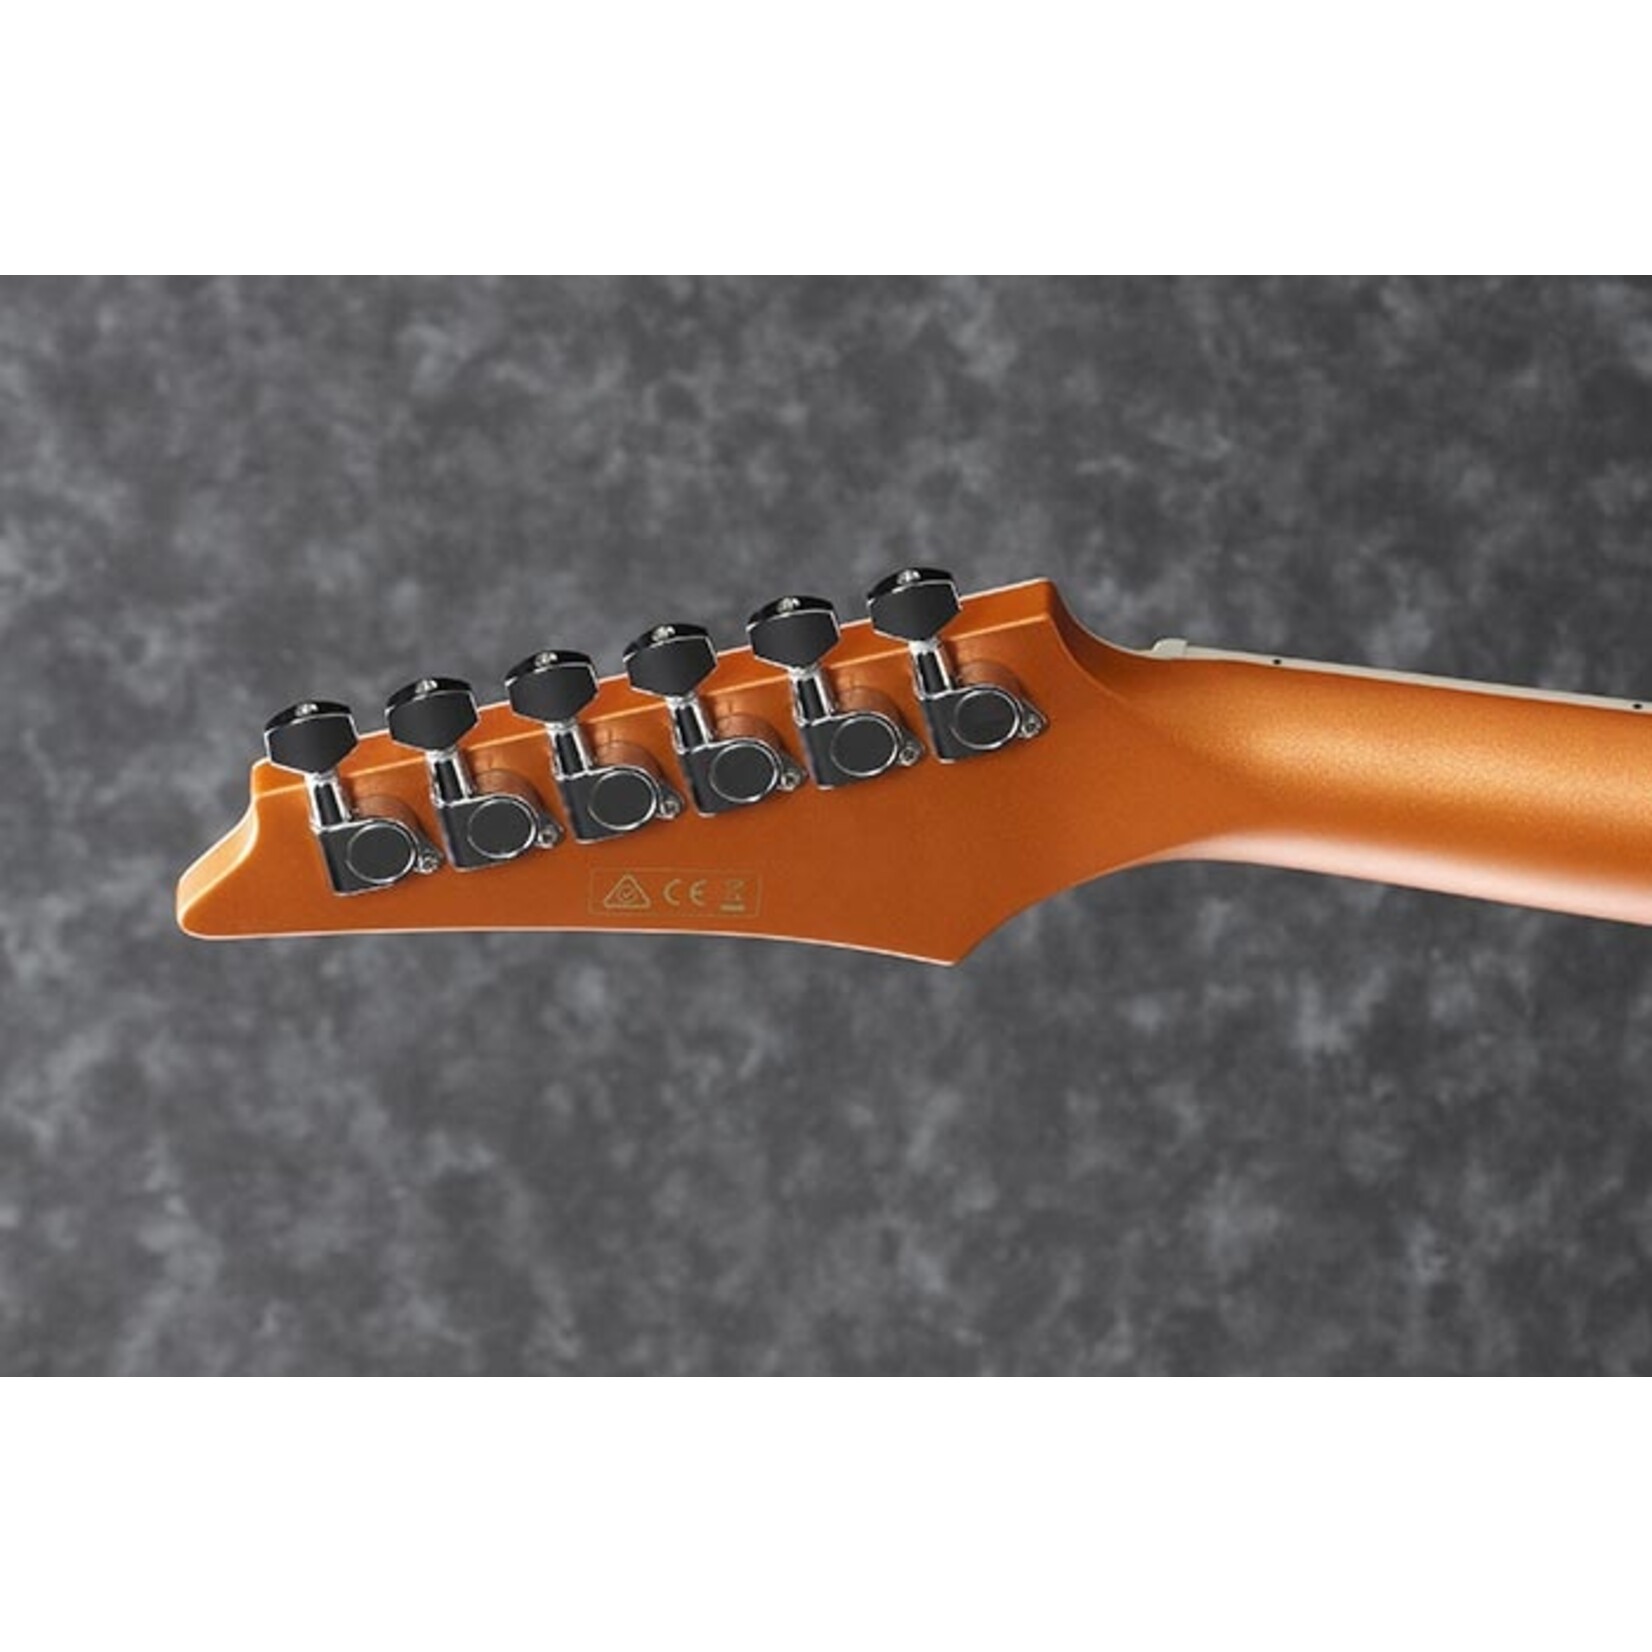 Ibanez Altstar ALT30 Acoustic-Electric Guitar - Dark Orange Metallic